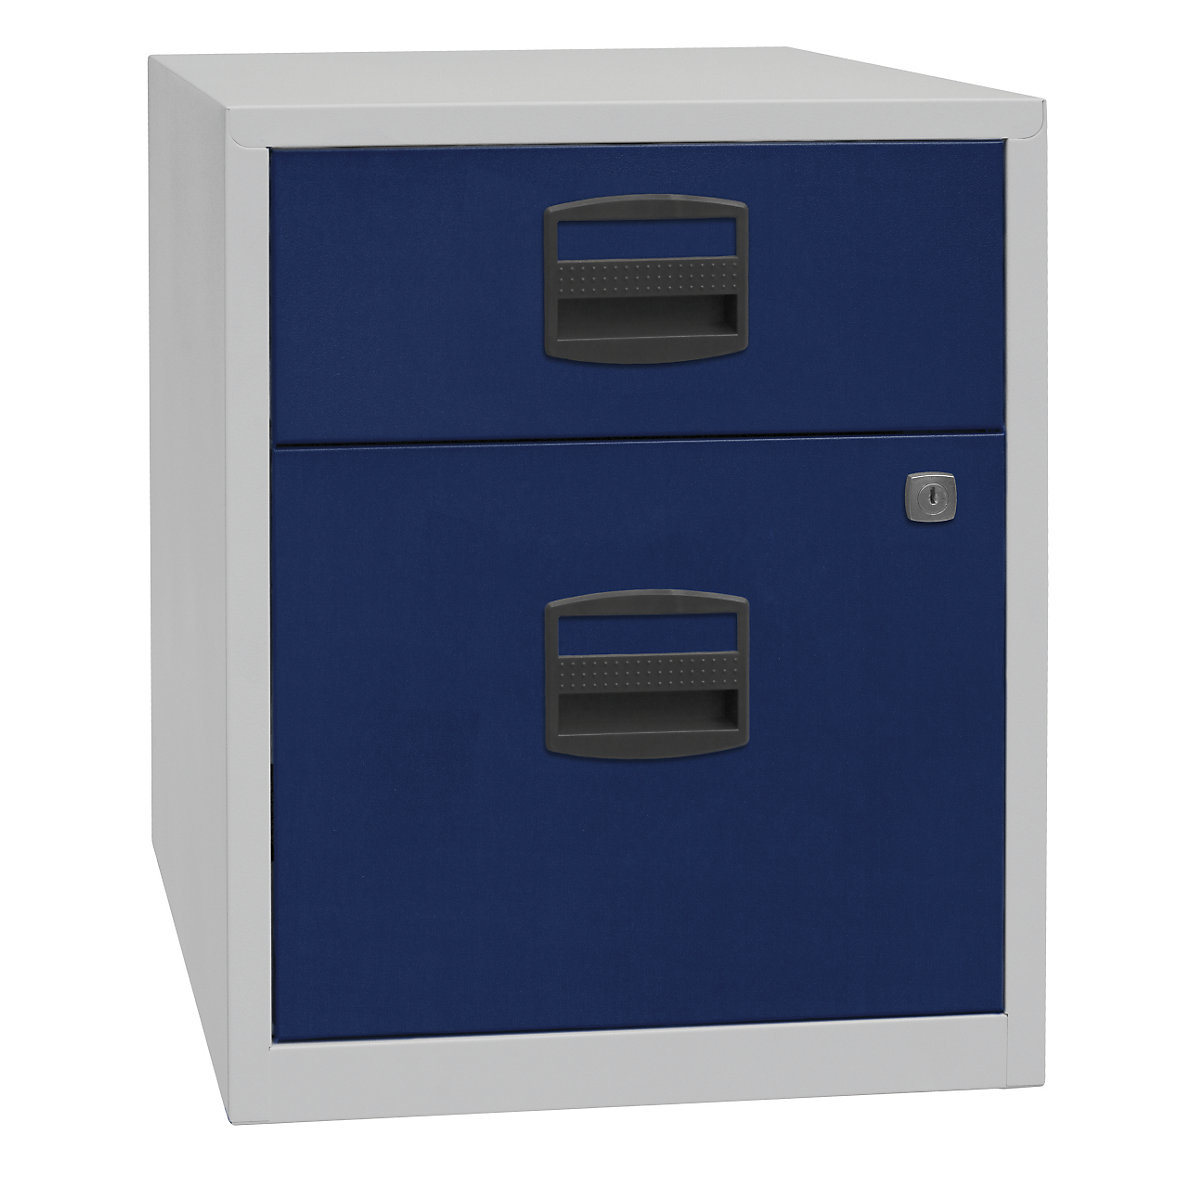 Mobiletto mobile PFA – BISLEY, 1 cassetto, 1 cassetto per cartelle sospese, grigio chiaro / blu oxford-5